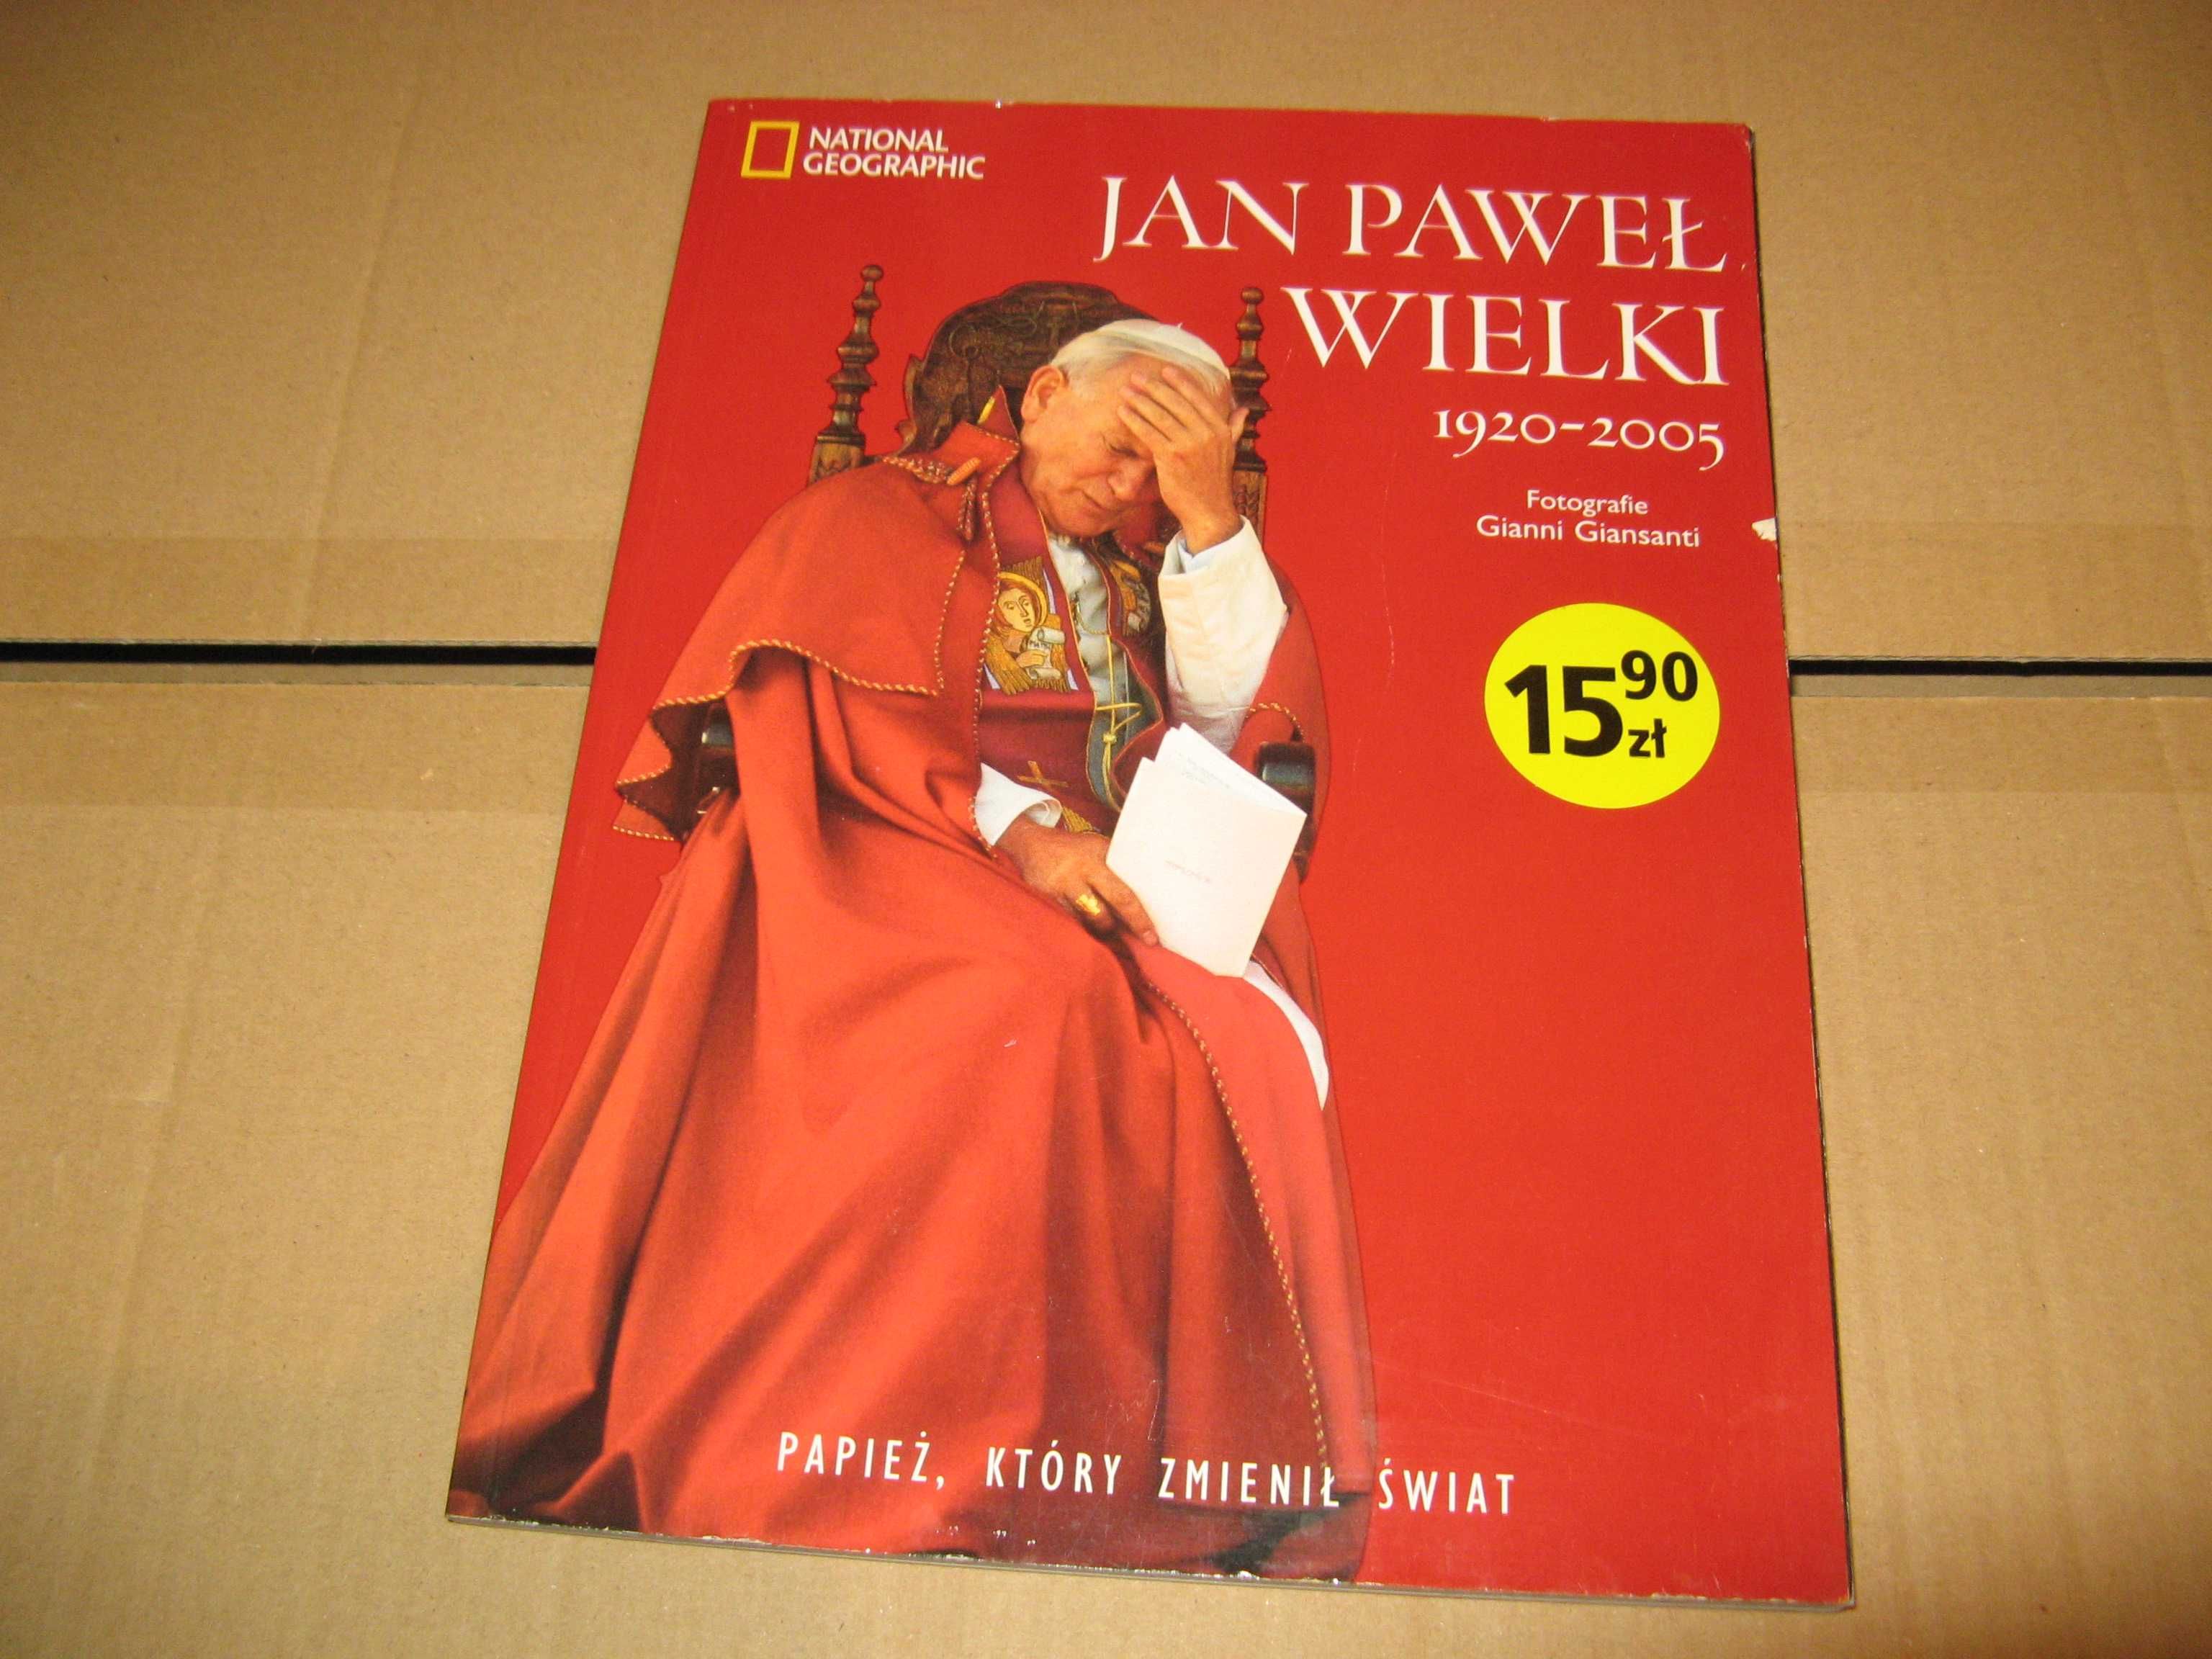 „Jan Paweł Wielki 1920 - 2005”